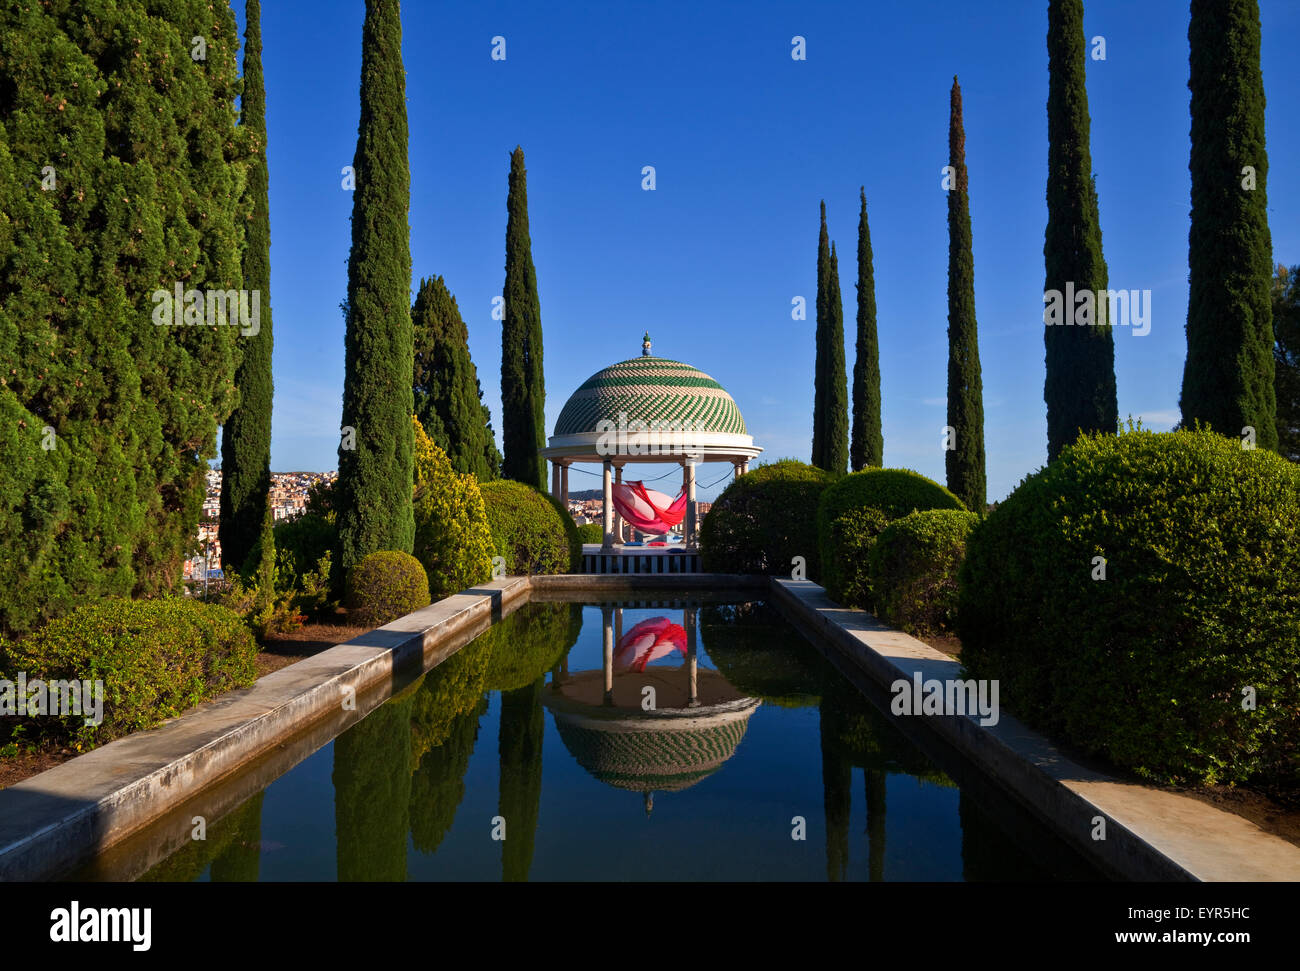 La piscina e il tempio con arte di installazione, giardino botanico o Jardin Botanico de la Concepción, Malaga, Andalusia. Foto Stock